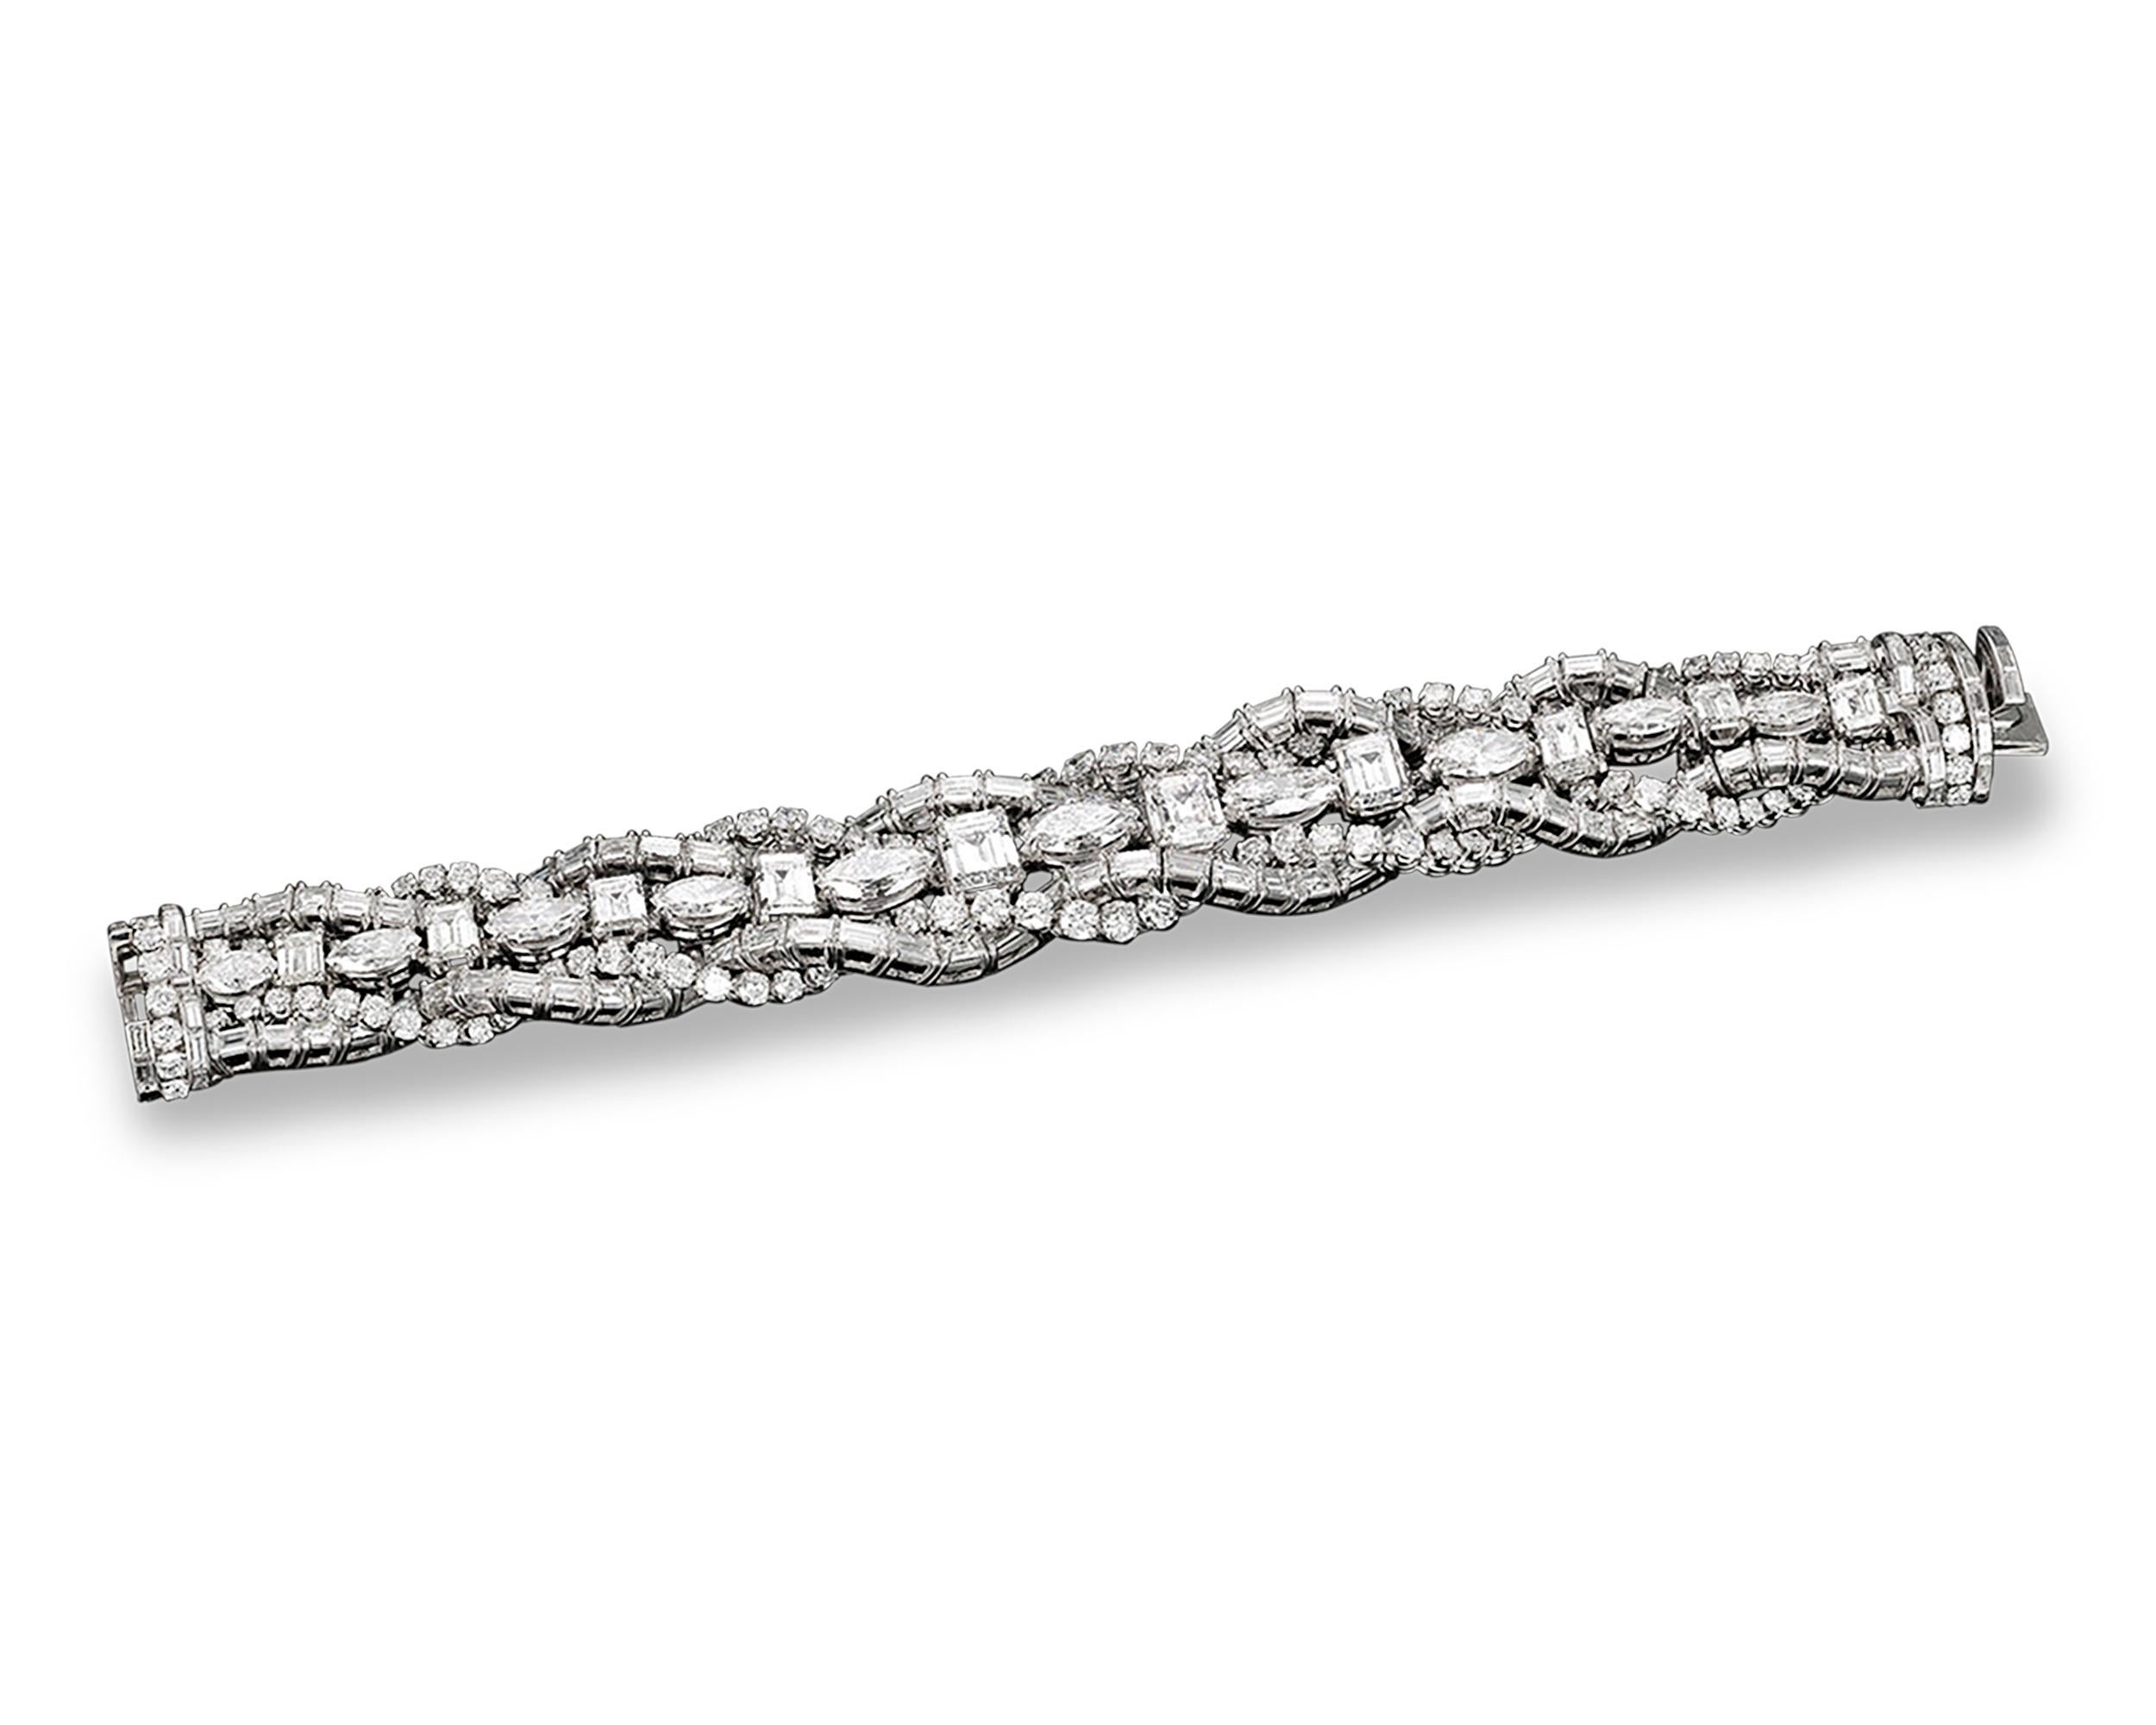 Dieses tadellose französische Armband ist mit einer atemberaubenden Kollektion reinweißer Diamanten geschmückt. Die größten fünf dieser prächtigen Steine mit einem Gesamtgewicht von 9,19 Karat sind alle vom GIA mit der Farbe D zertifiziert. Mit